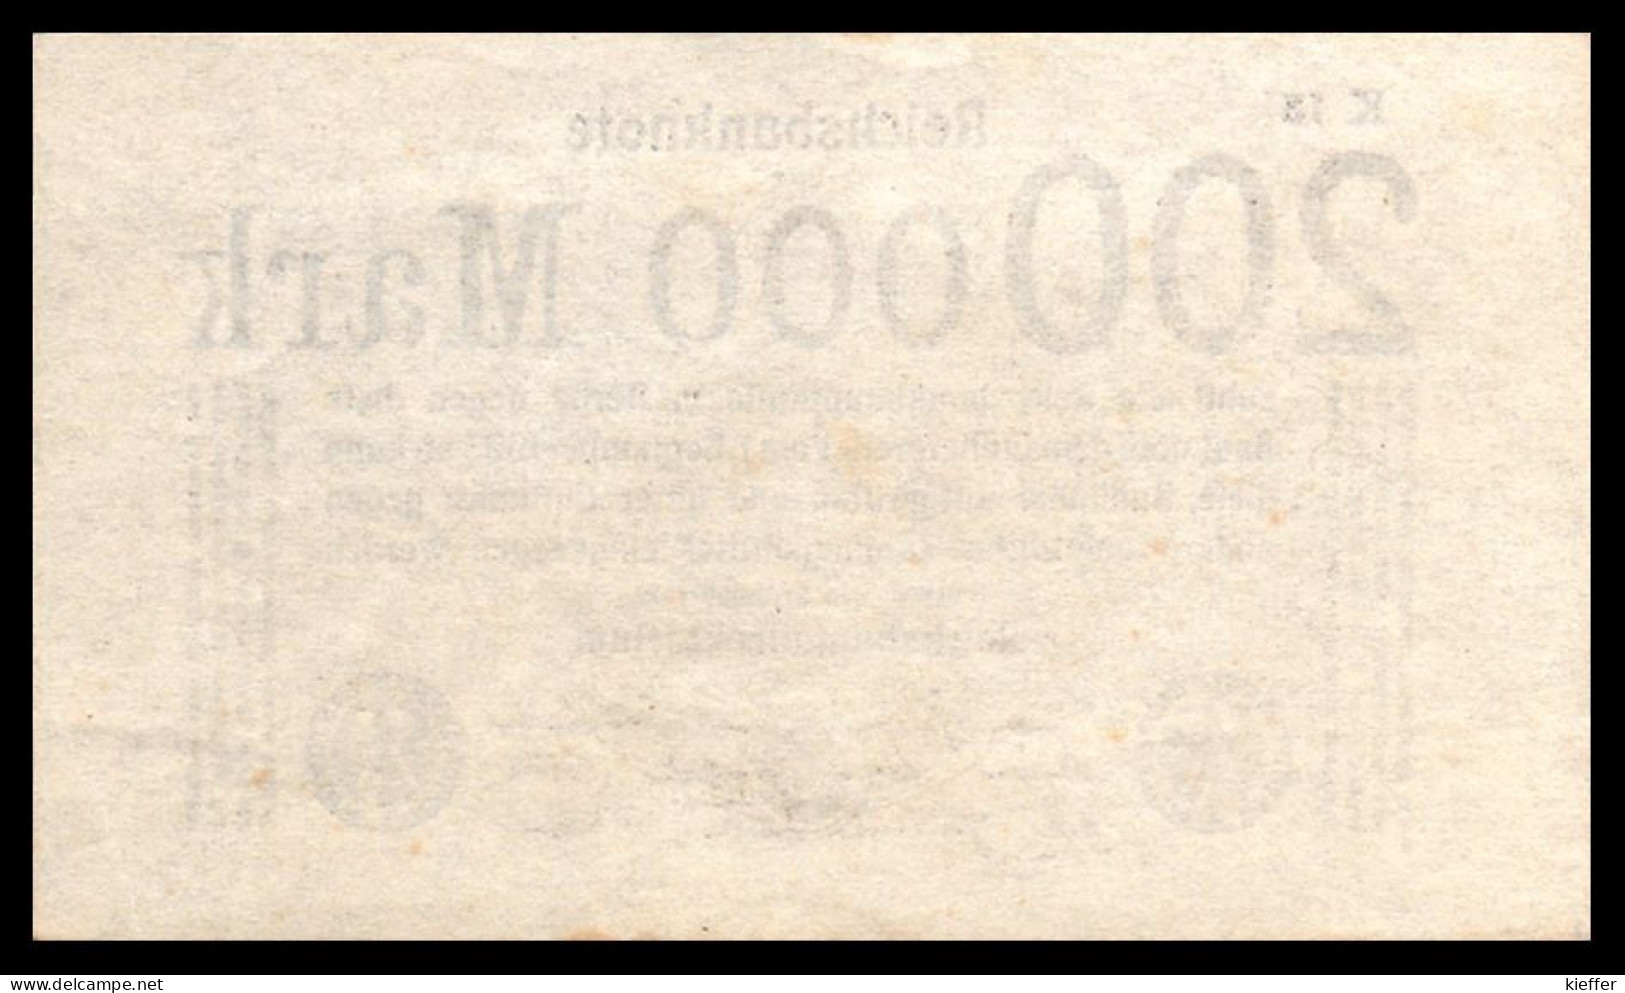 DEUTSCHLAND - ALLEMAGNE - 200 000 Mark Reichsbanknote - 1923 - P100 - UNC / NEUF - 20 Miljoen Mark